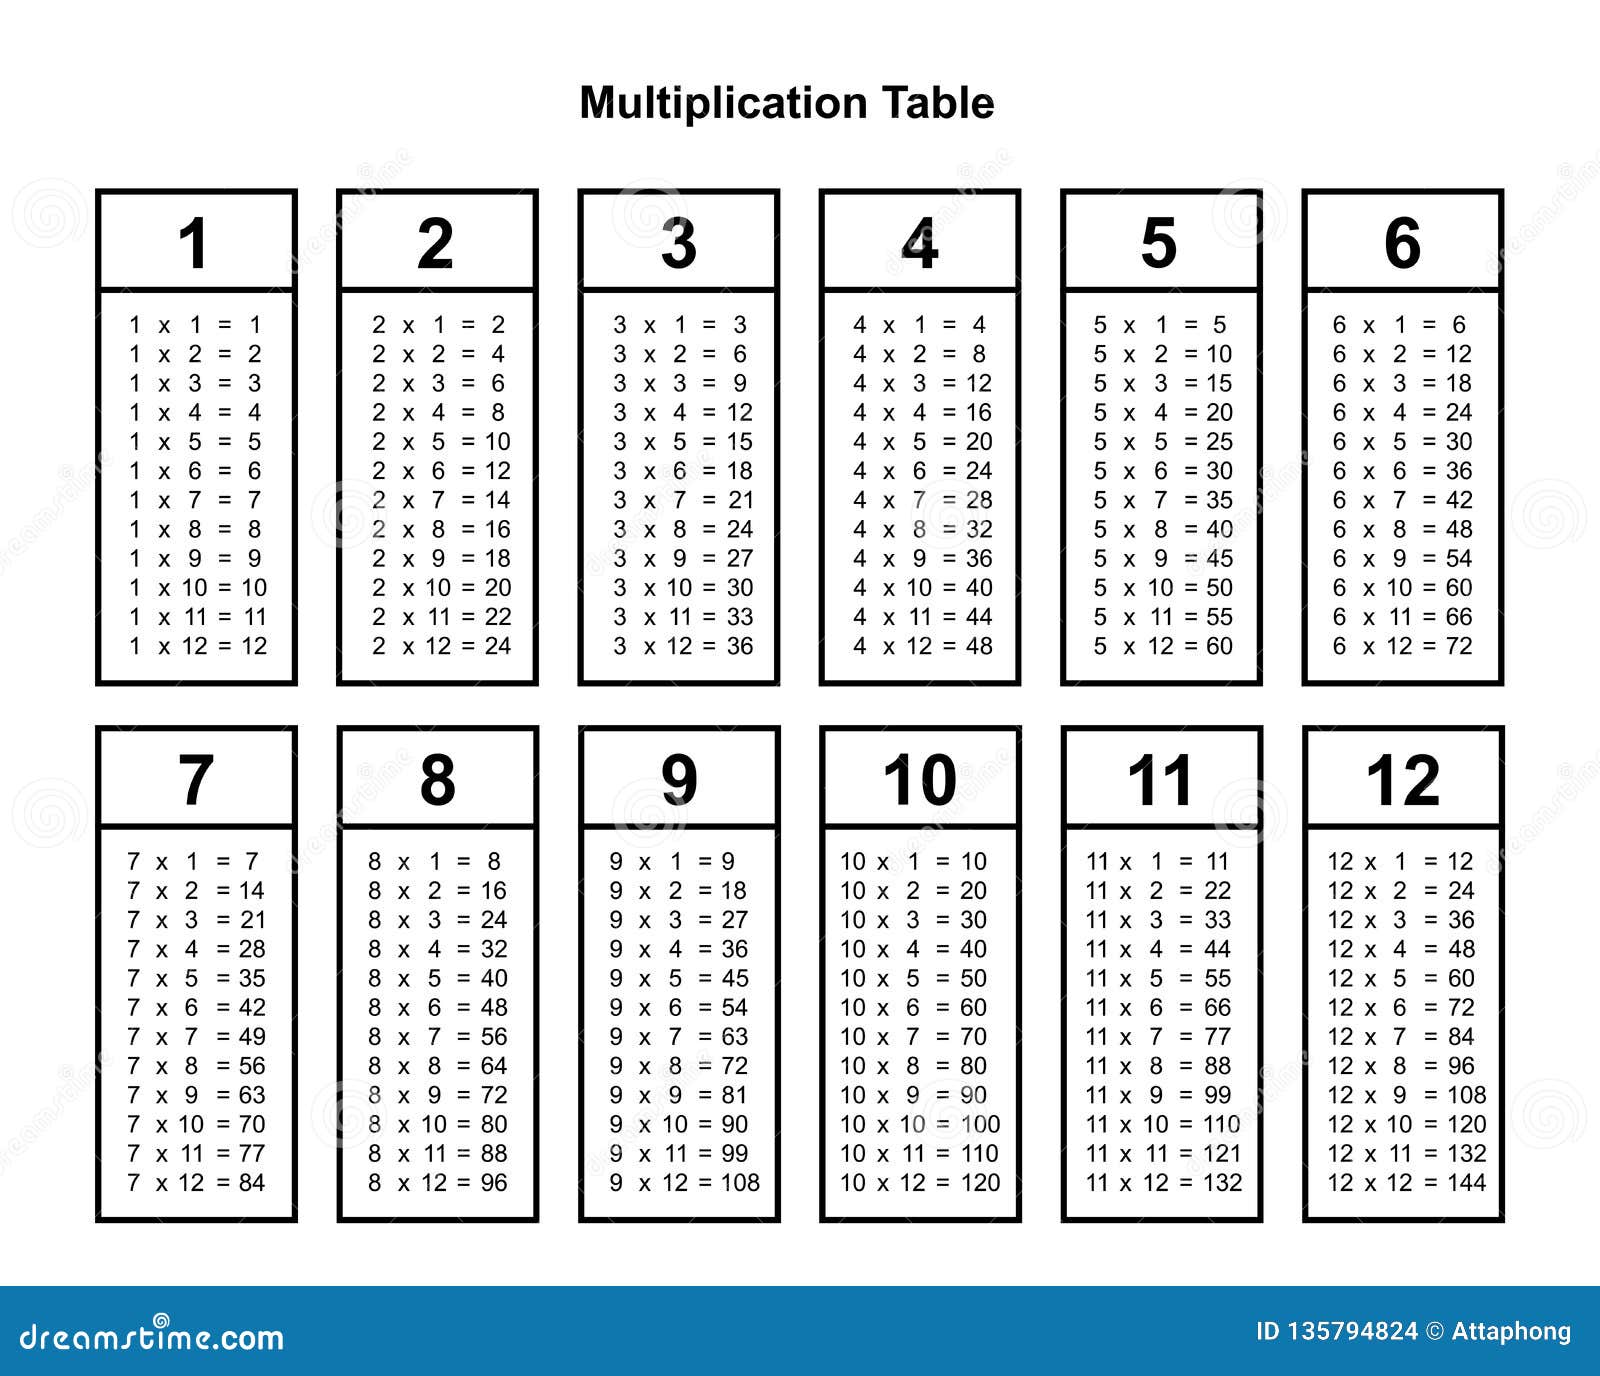 Printable Table Chart